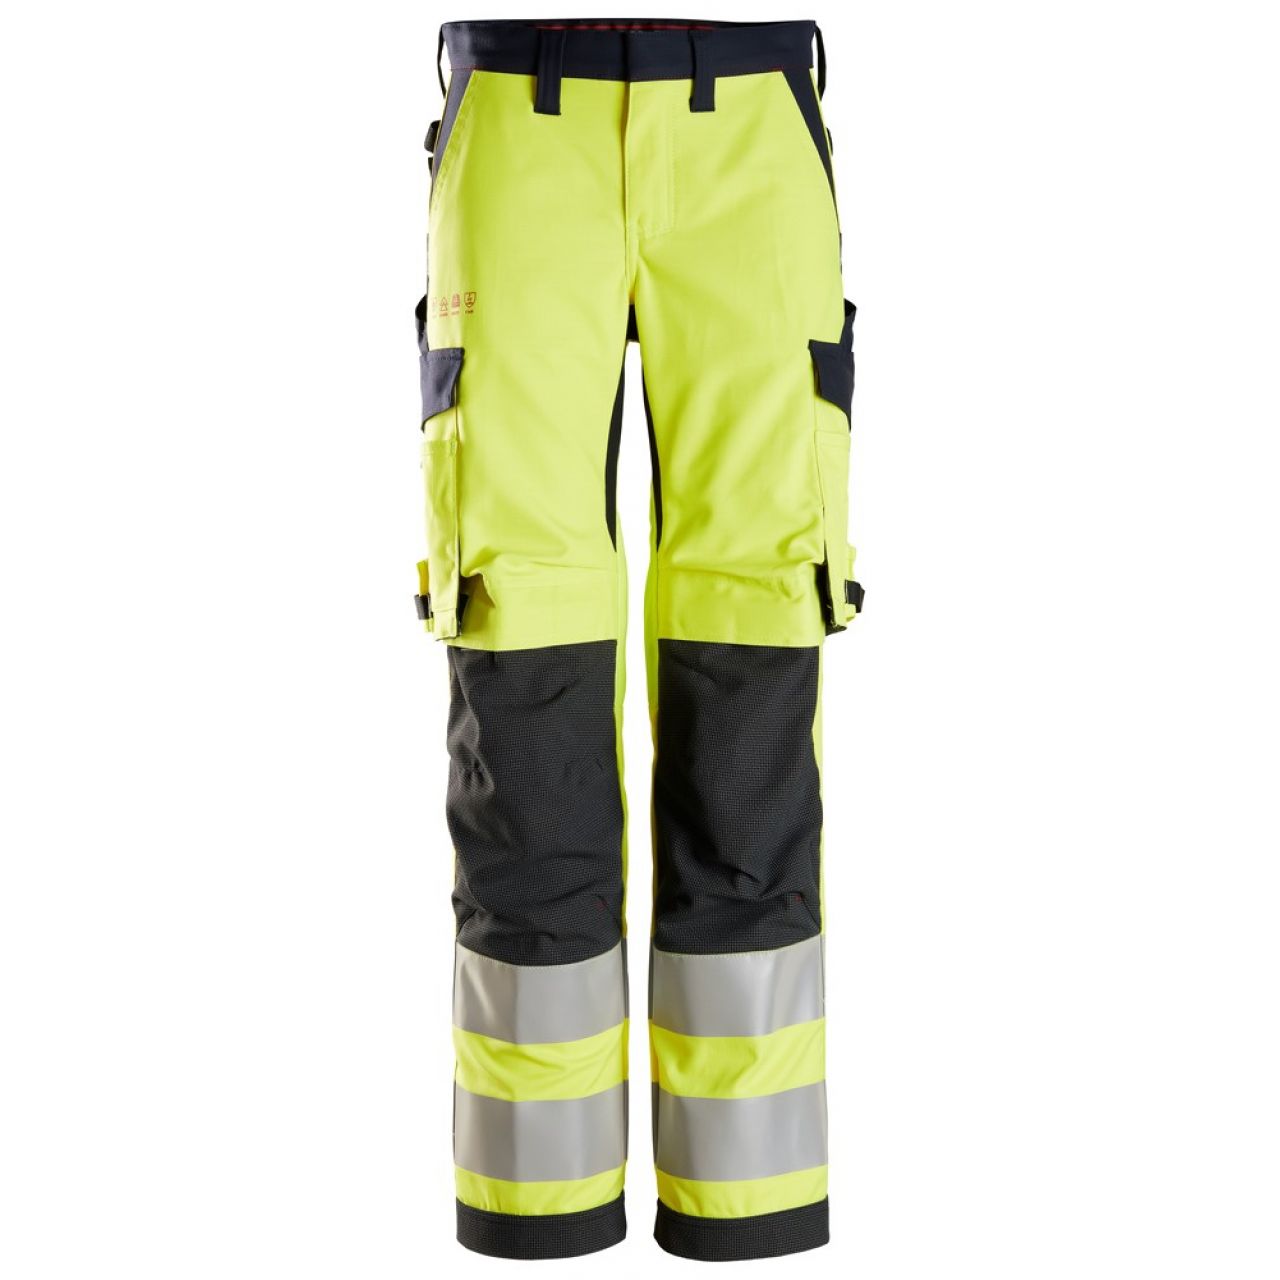 6760 Pantalones largos de trabajo de alta visibilidad clase 2 para mujer ProtecWork amarillo-azul marino talla 32